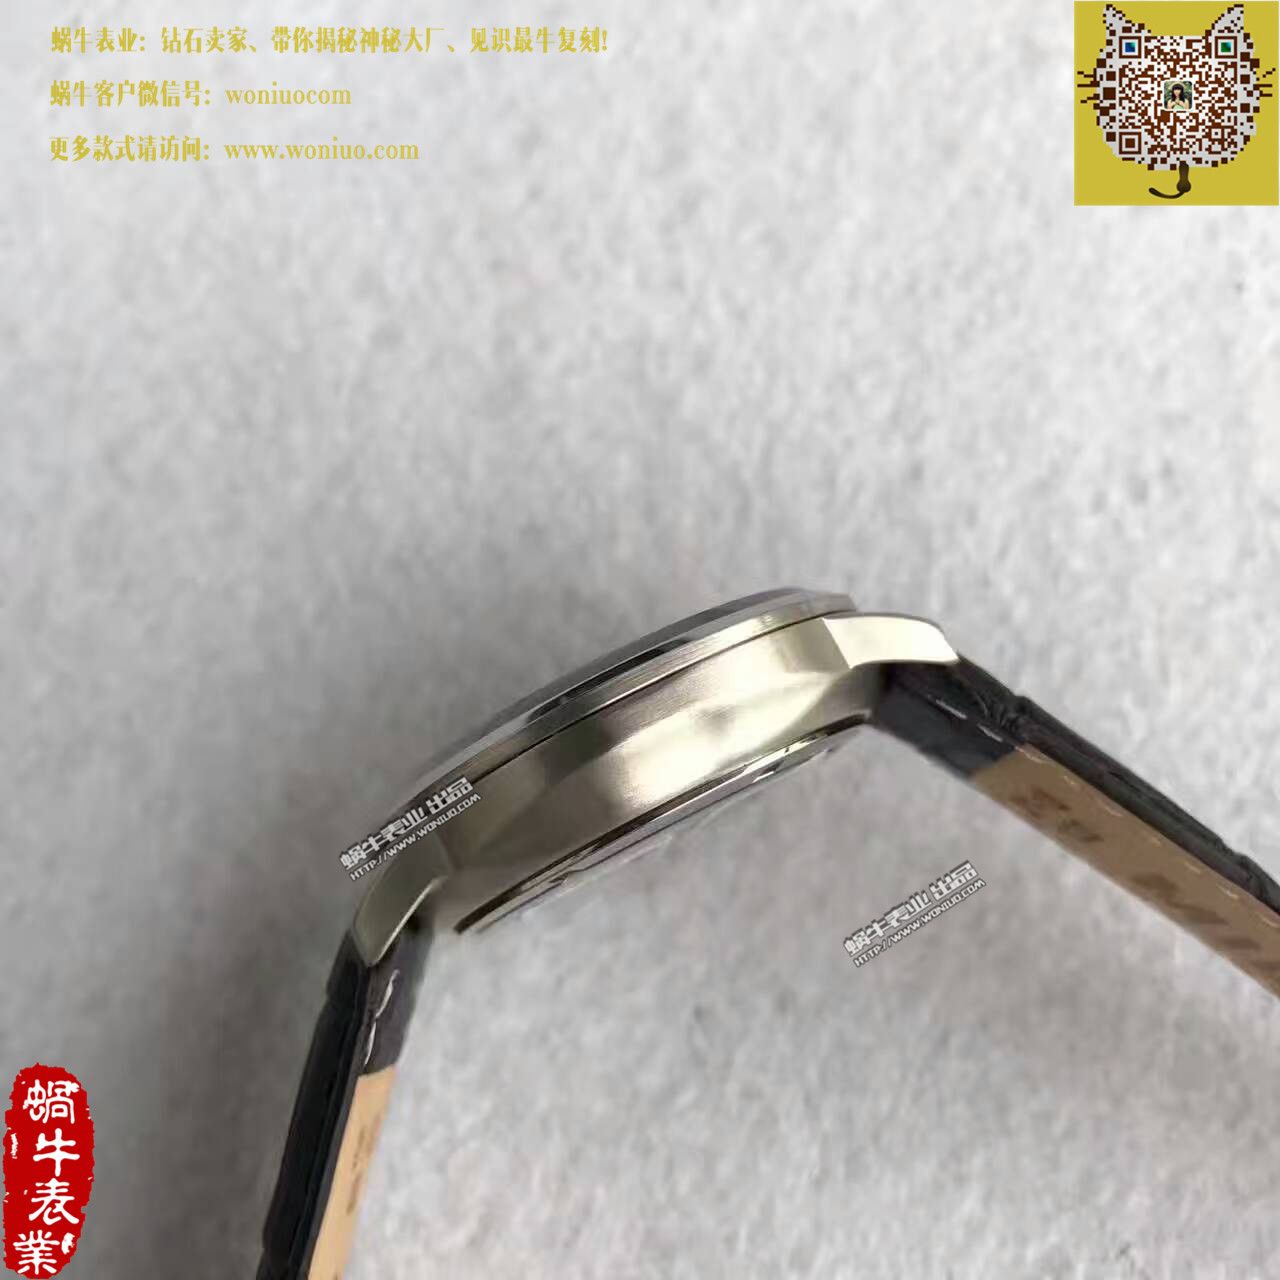 【台湾厂一比一超A精仿手表】美度指挥官系列M016.430.16.061.22腕表 